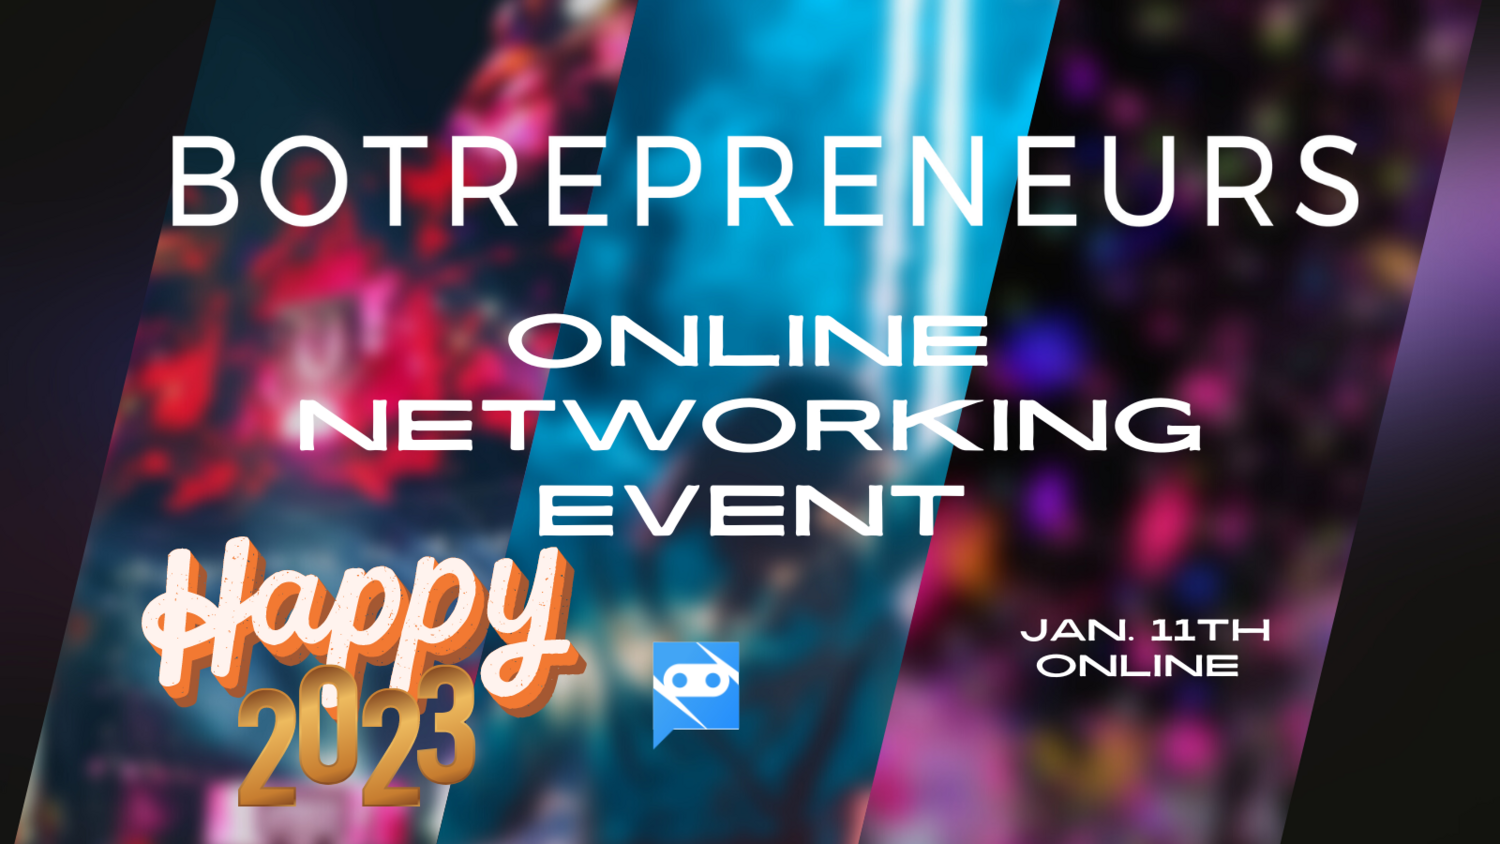 Botrepreneurs Online Networking Event